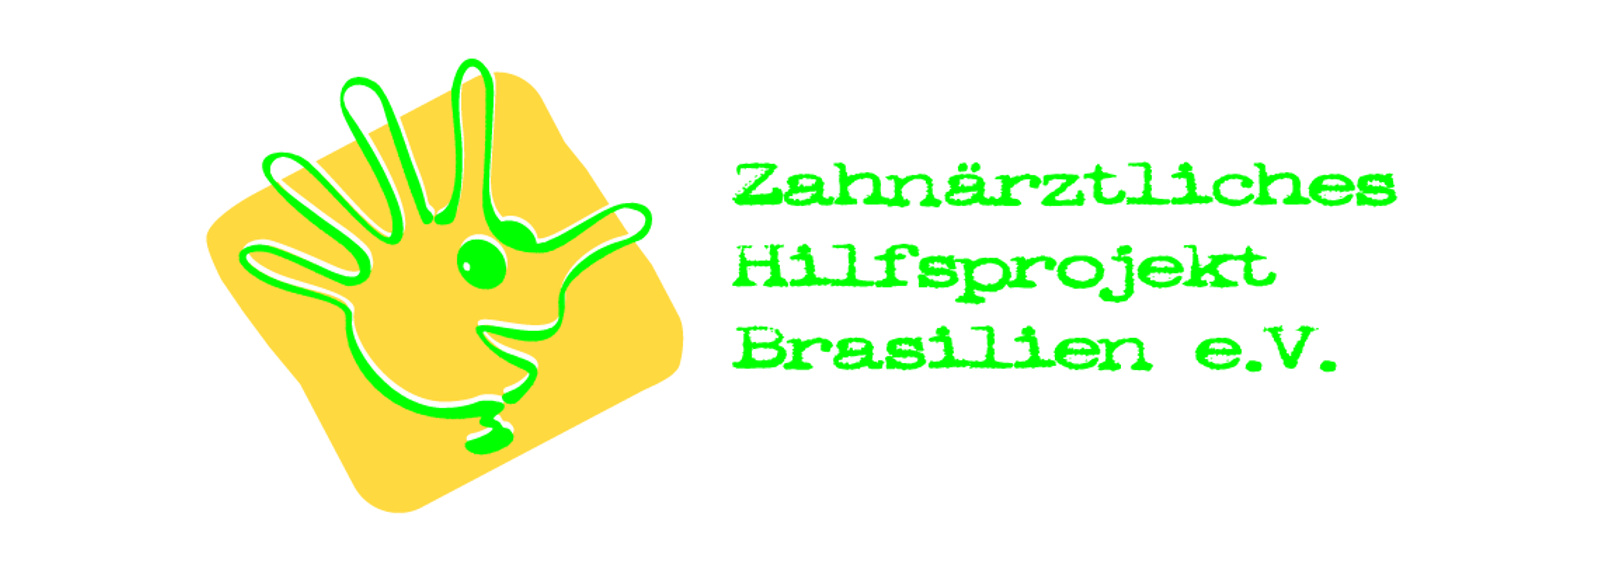 Impressum - Zahnärztliches Hilfsprojekt Brasilien e.V.